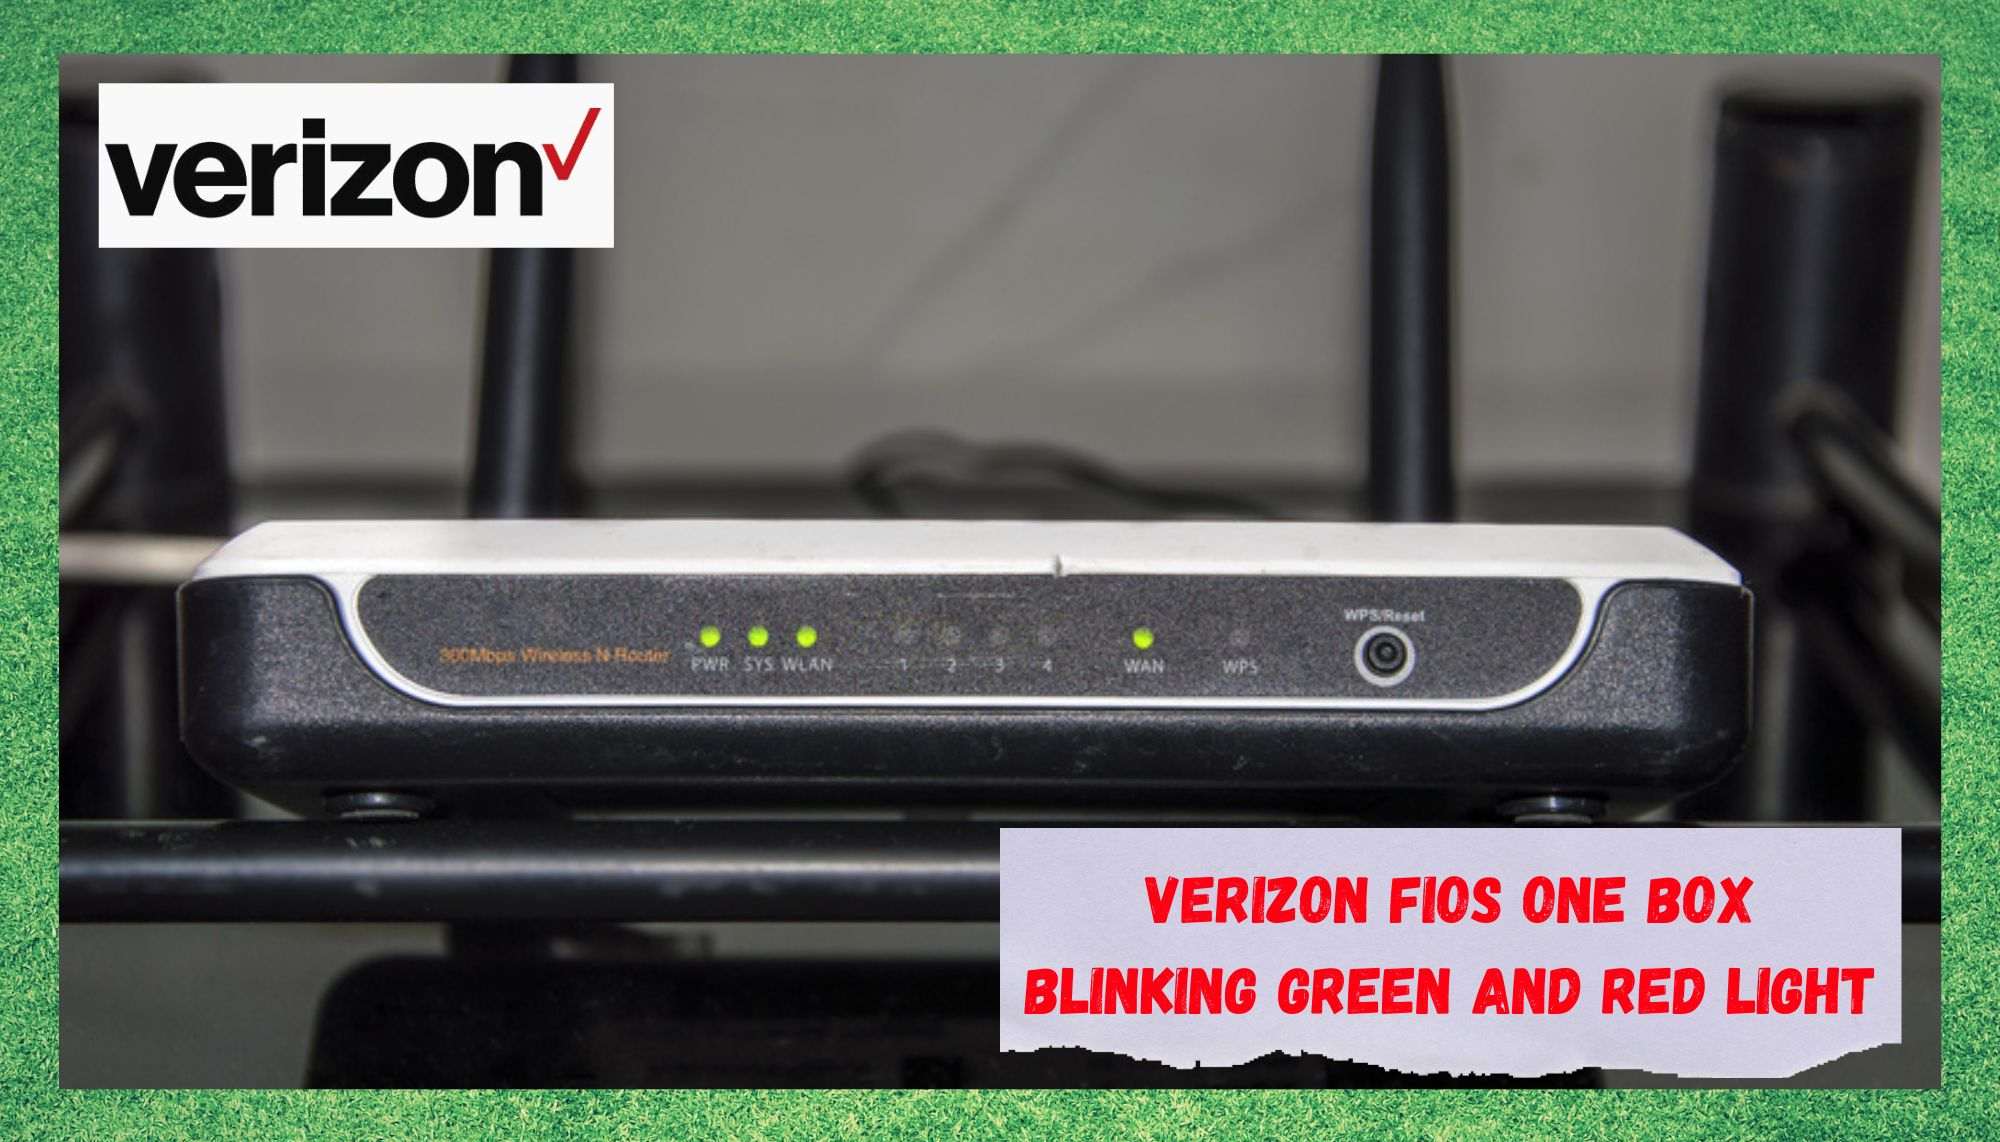 2 razloga zašto Verizon FiOS One Box treperi zeleno i crveno svjetlo